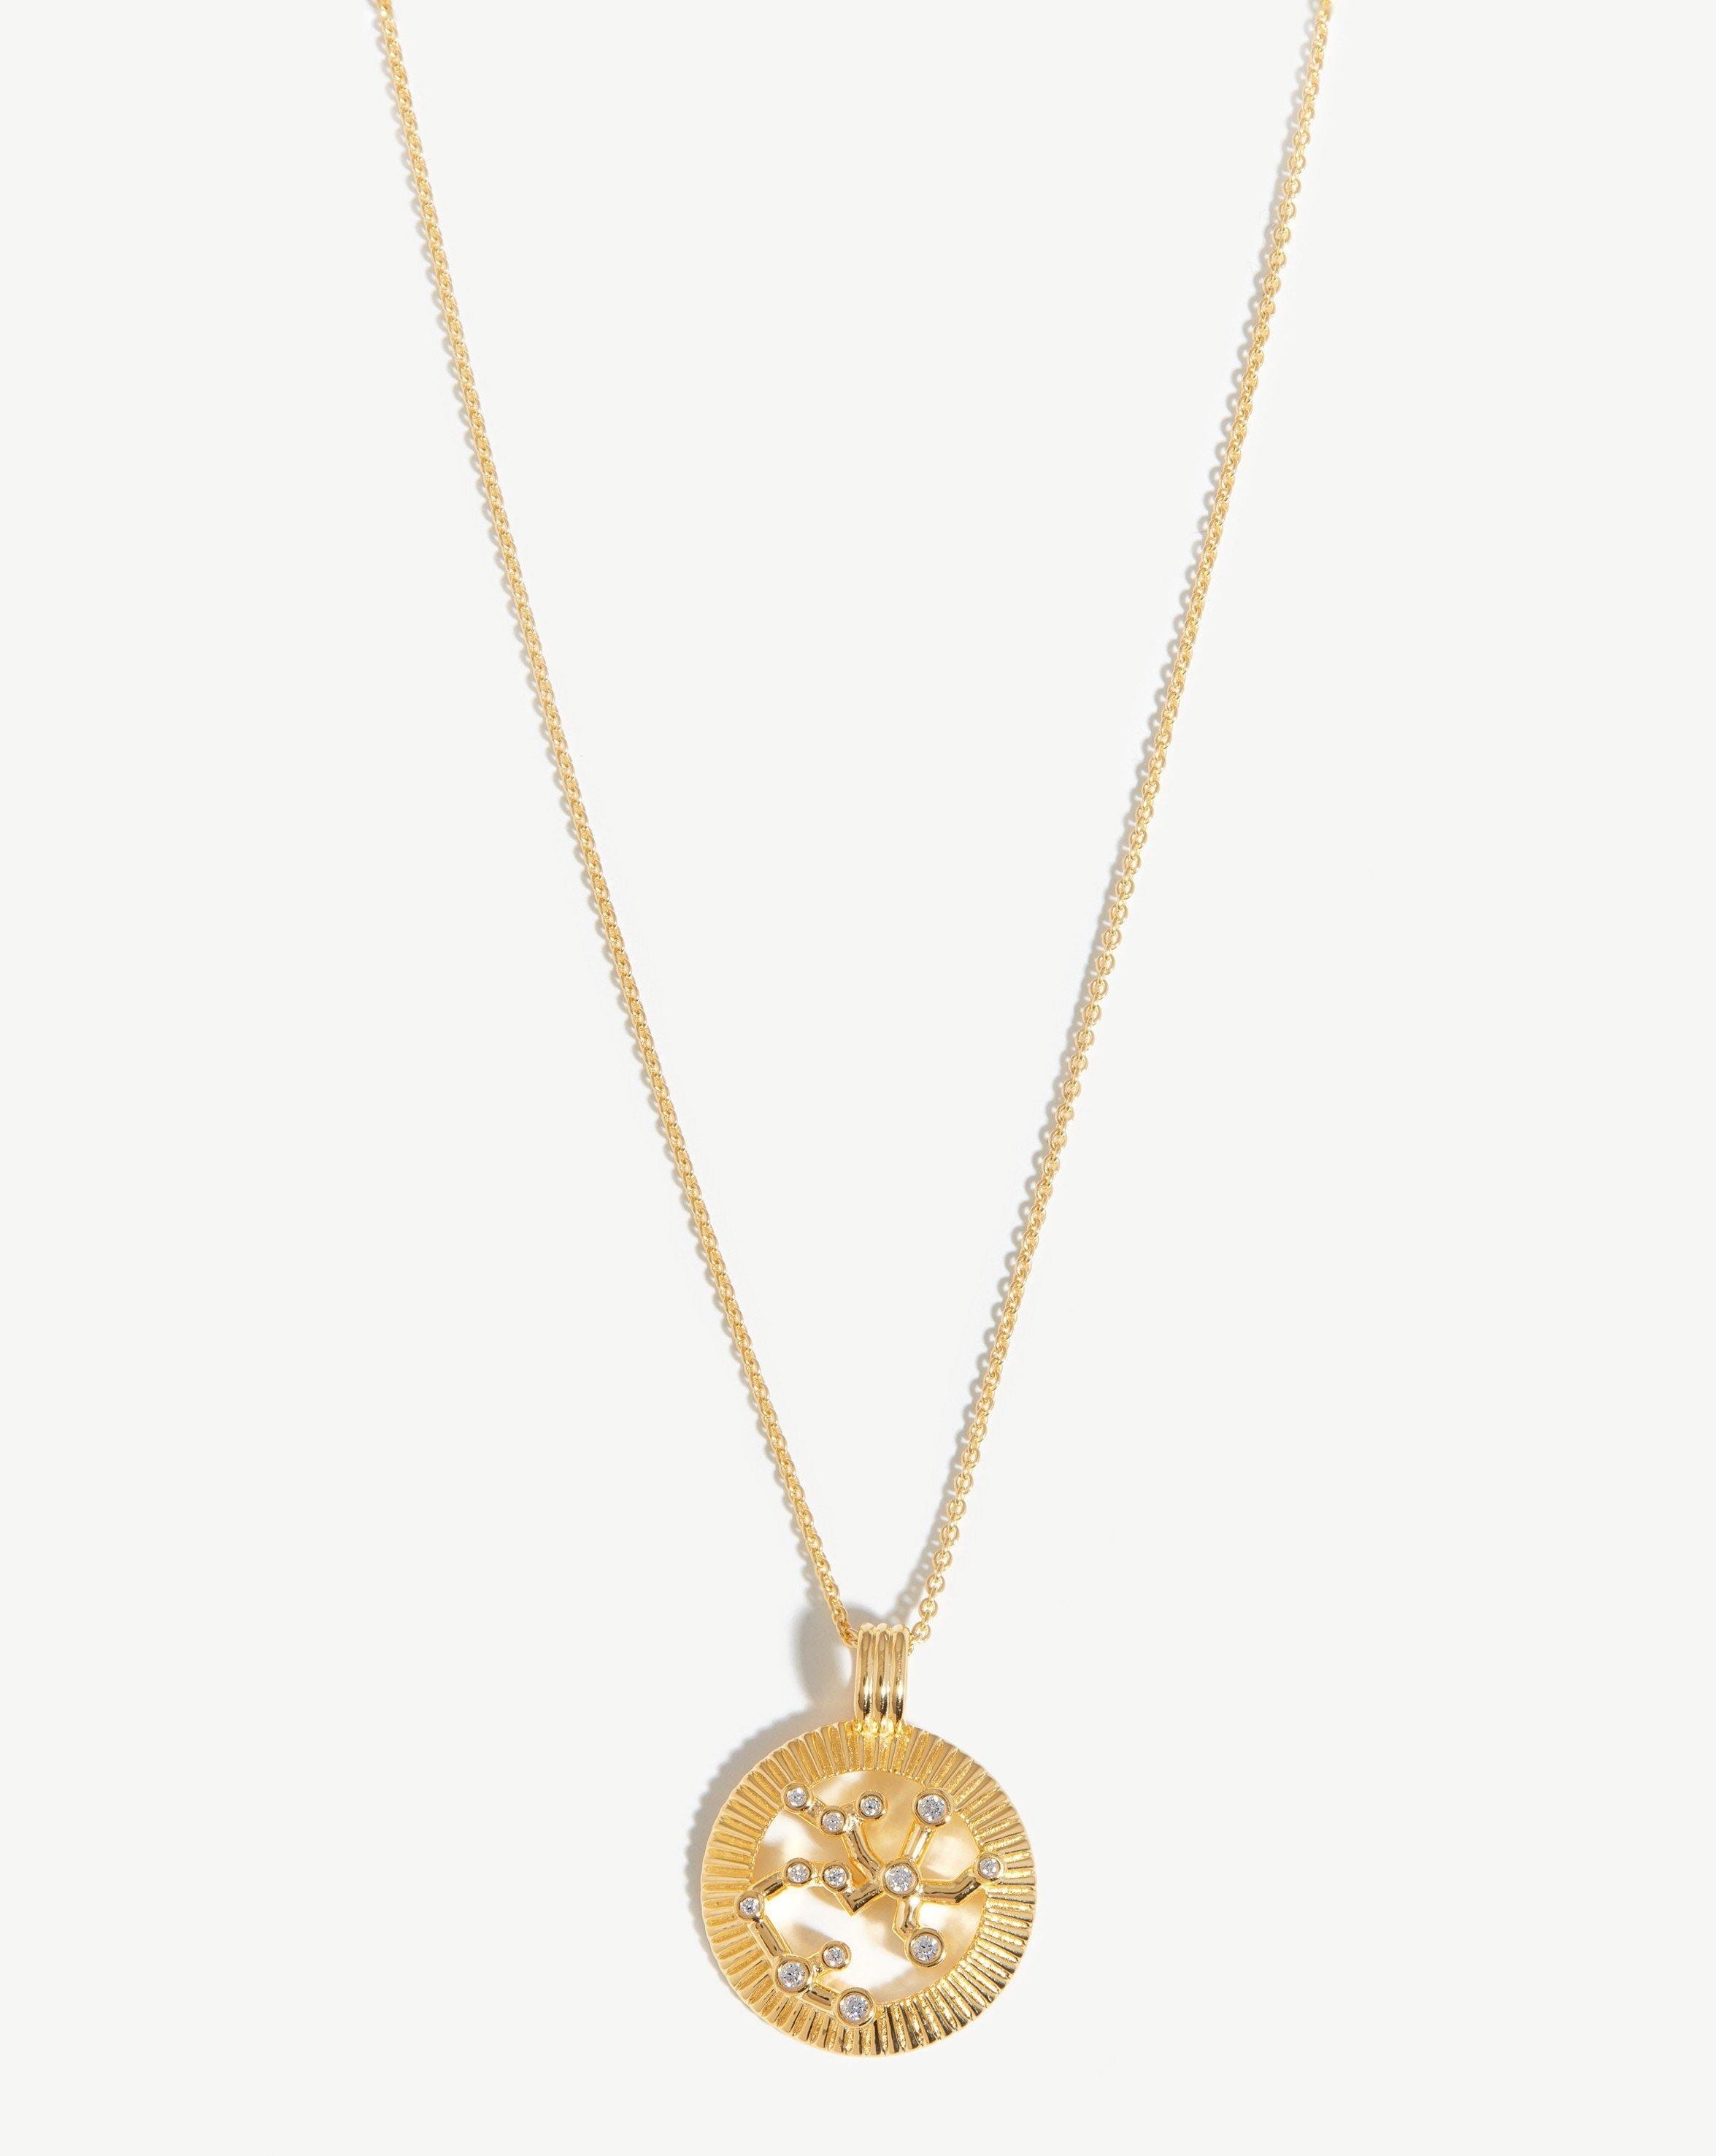 Zodiac Constellation Pendant Necklace - Sagittarius | 18ct Gold Plated Vermeil/Sagittarius Necklaces Missoma 